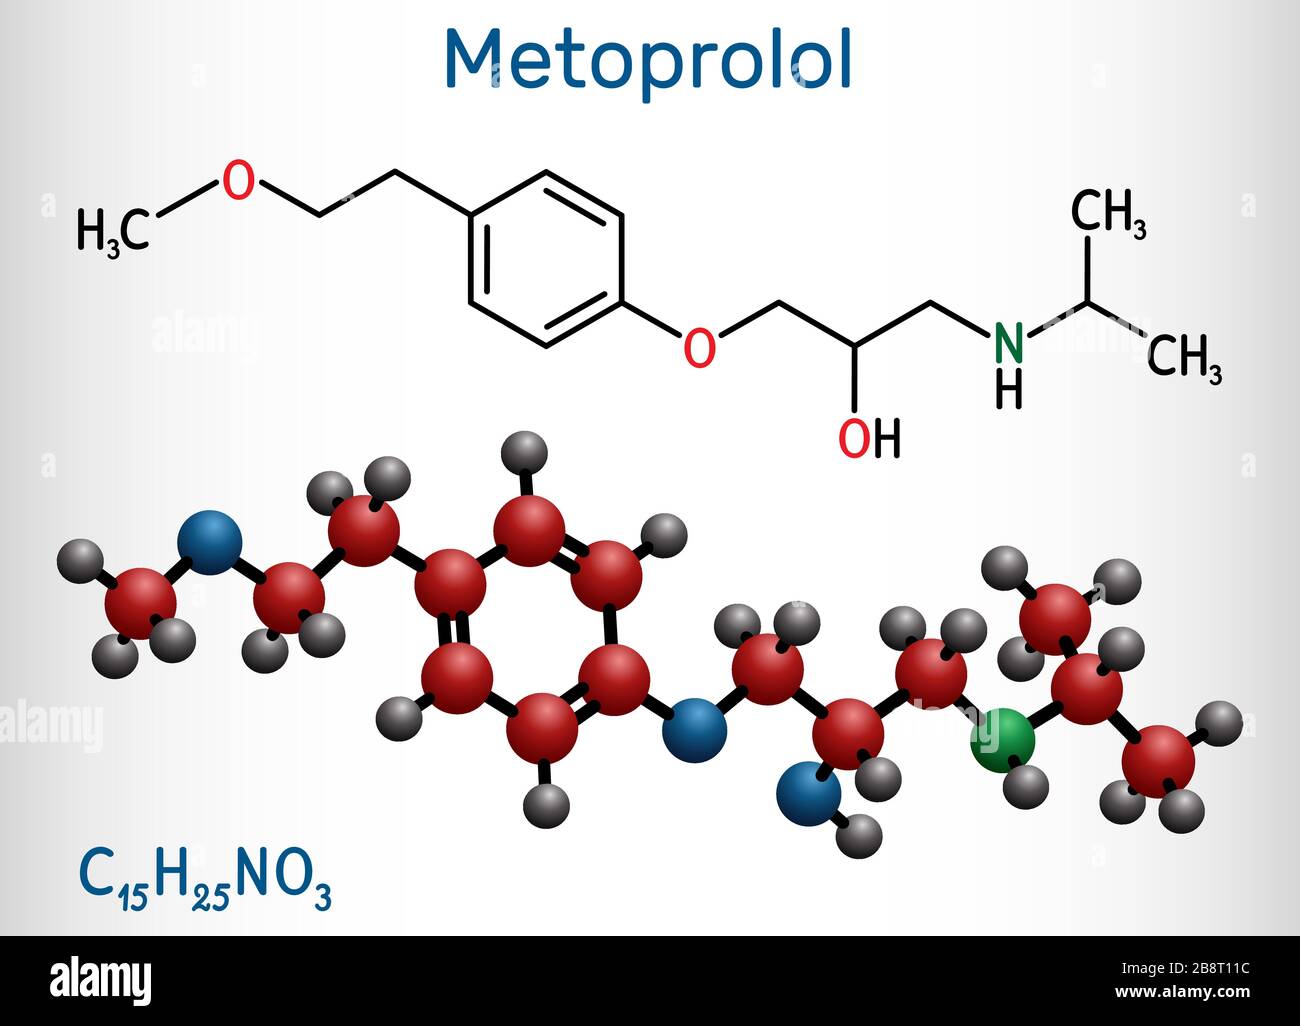 Metoprolol, C15H25NO3-Molekül. Es wird zur Behandlung von Hypertonie und Angina pectoris verwendet. Strukturelle chemische Formel und Molekularmodell. Vecto Stock Vektor